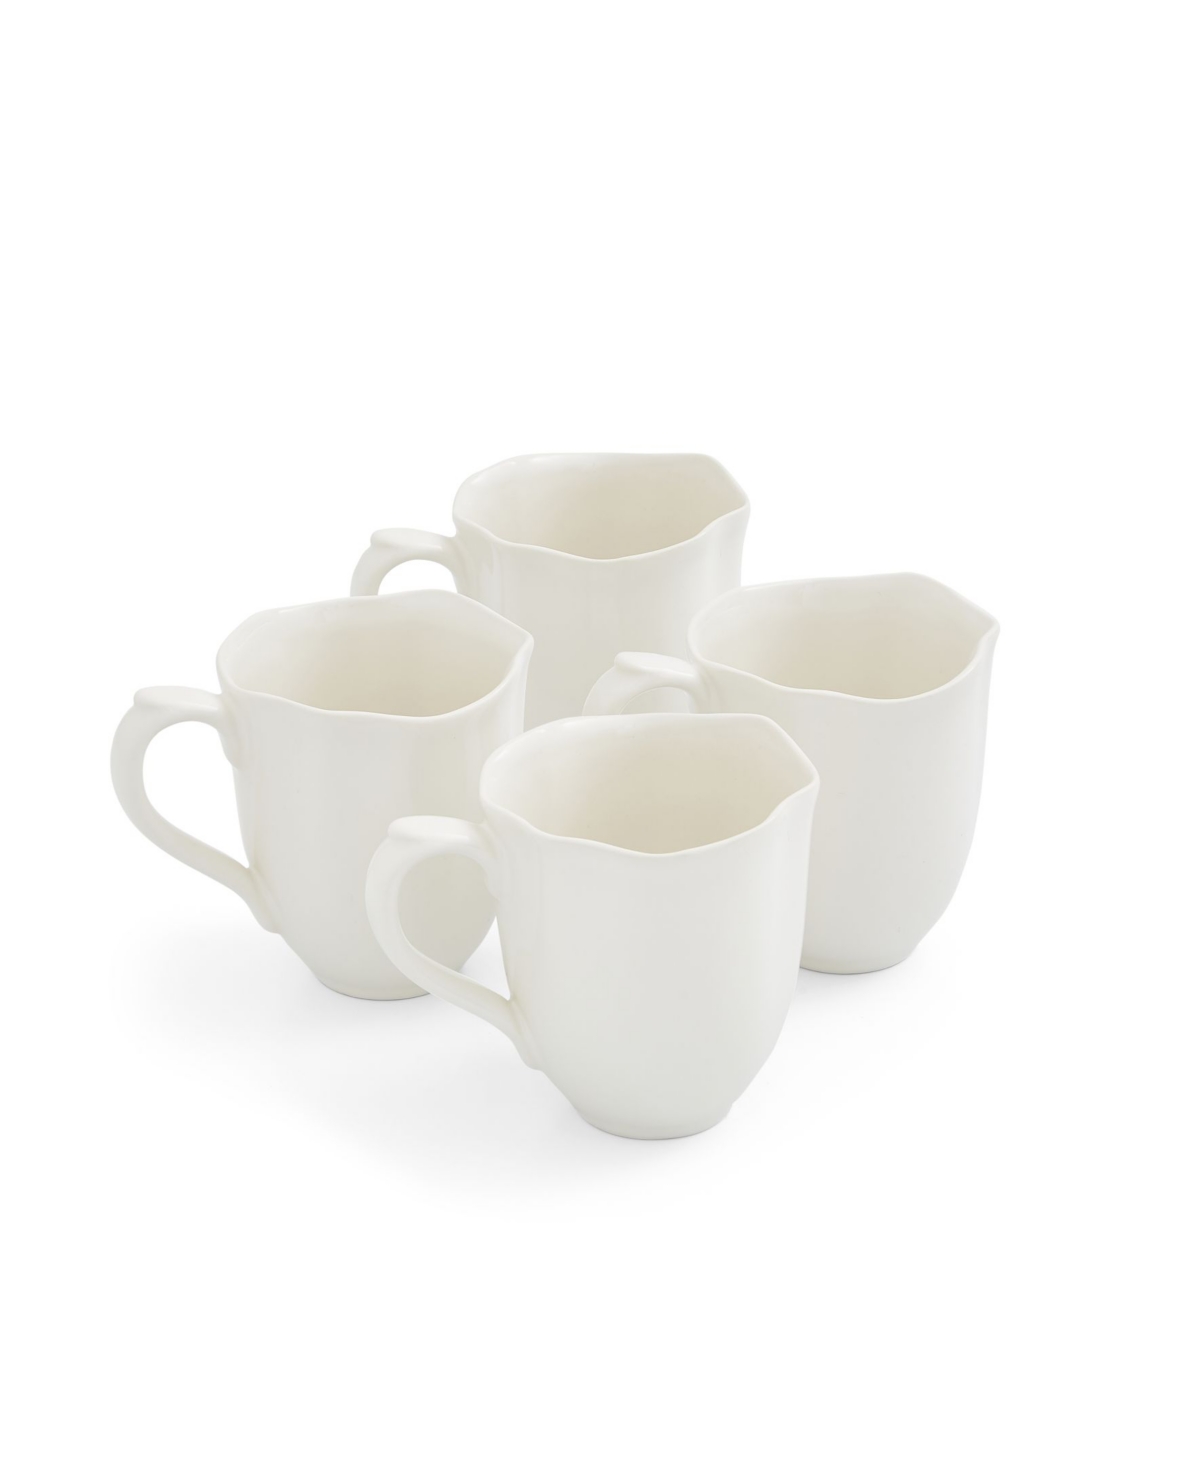 Sophie Conran Floret Mug, Set of 4 - Creamy White